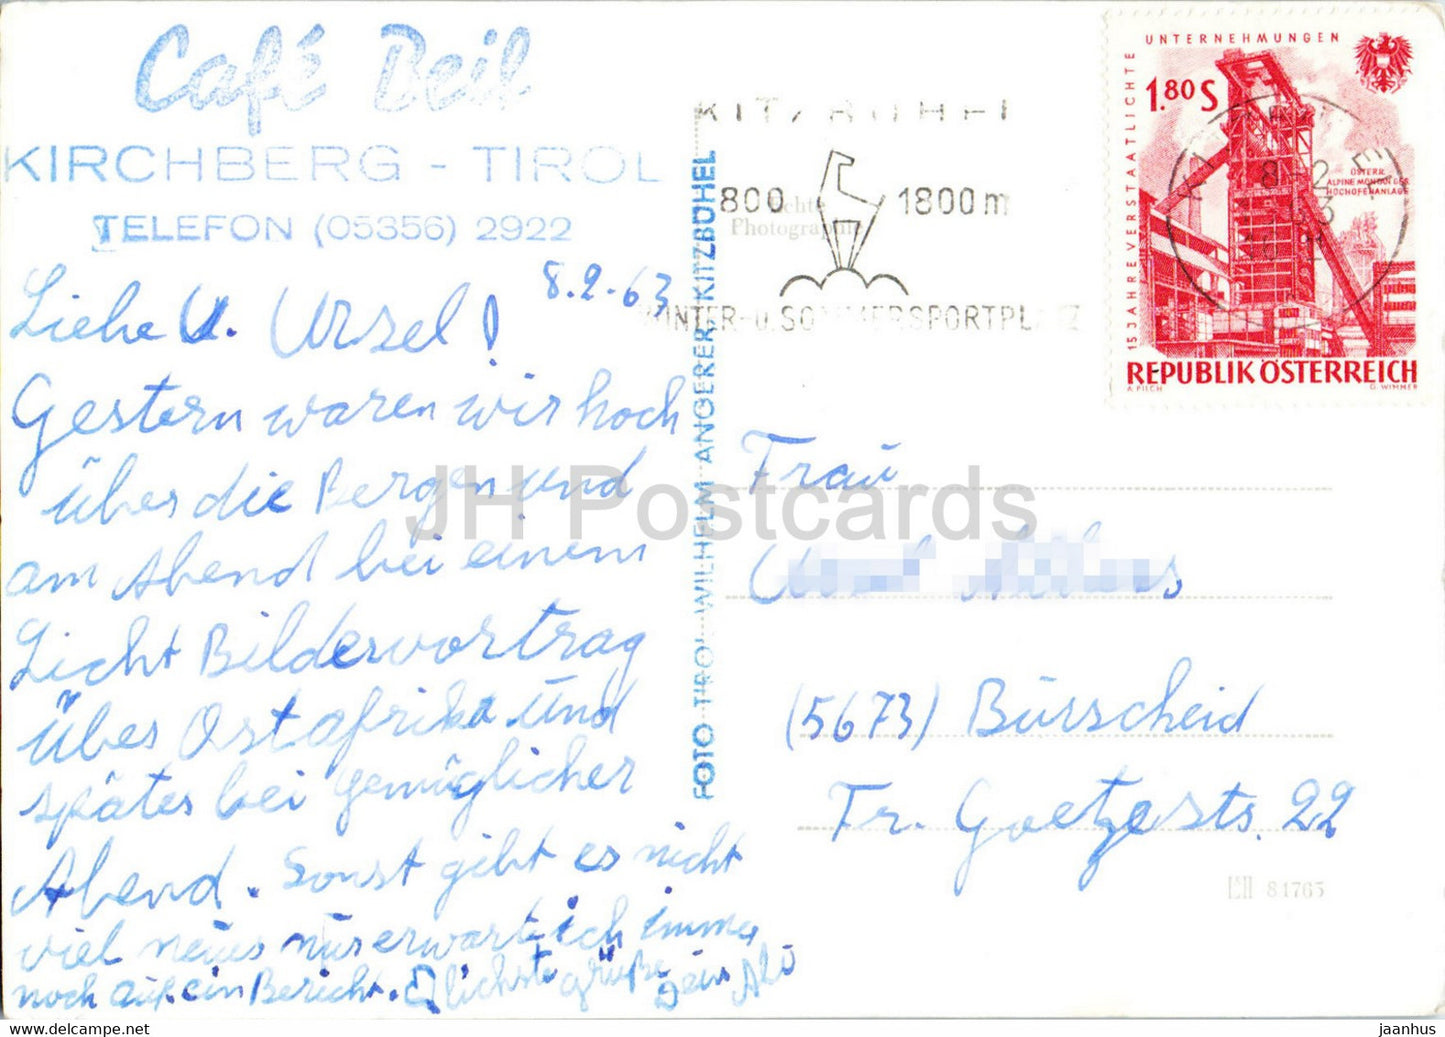 Café Beil - Kirchberg Tirol - carte postale ancienne - 1963 - Autriche - utilisé